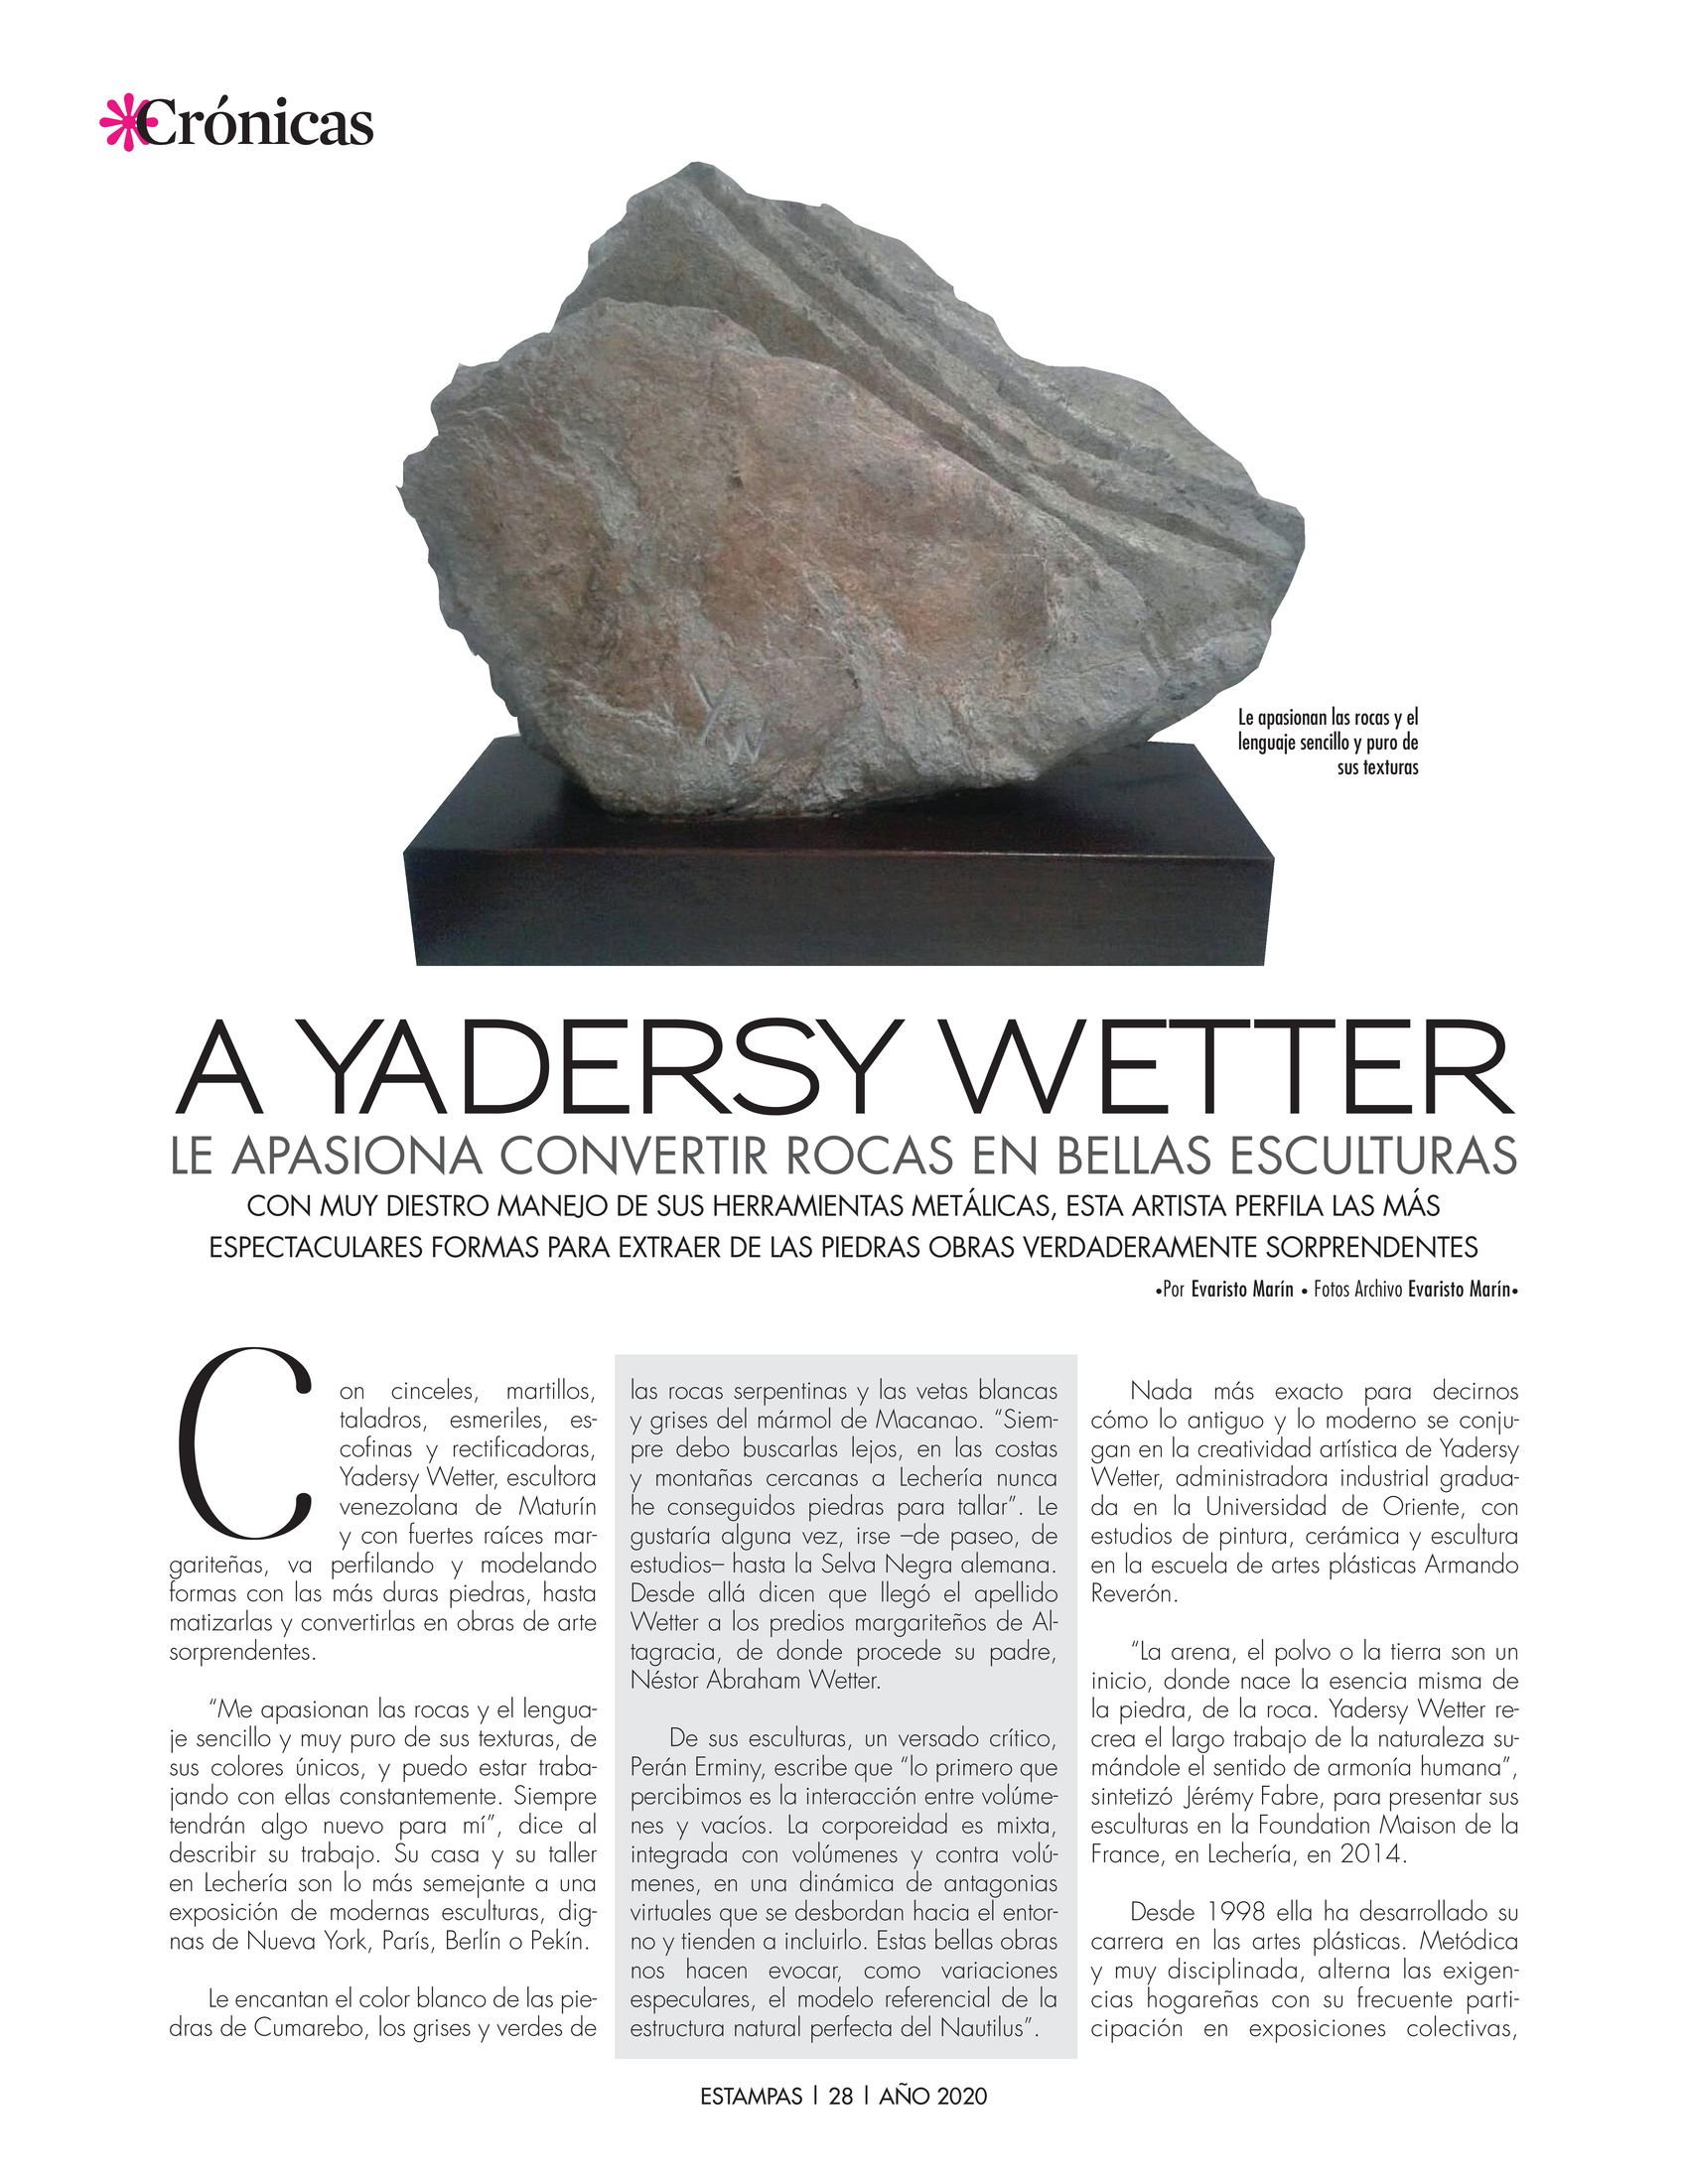 28-REV Historias: Evaristo Marín - A Yadersy Wetter le apasiona convertir rocas en bellas esculturas